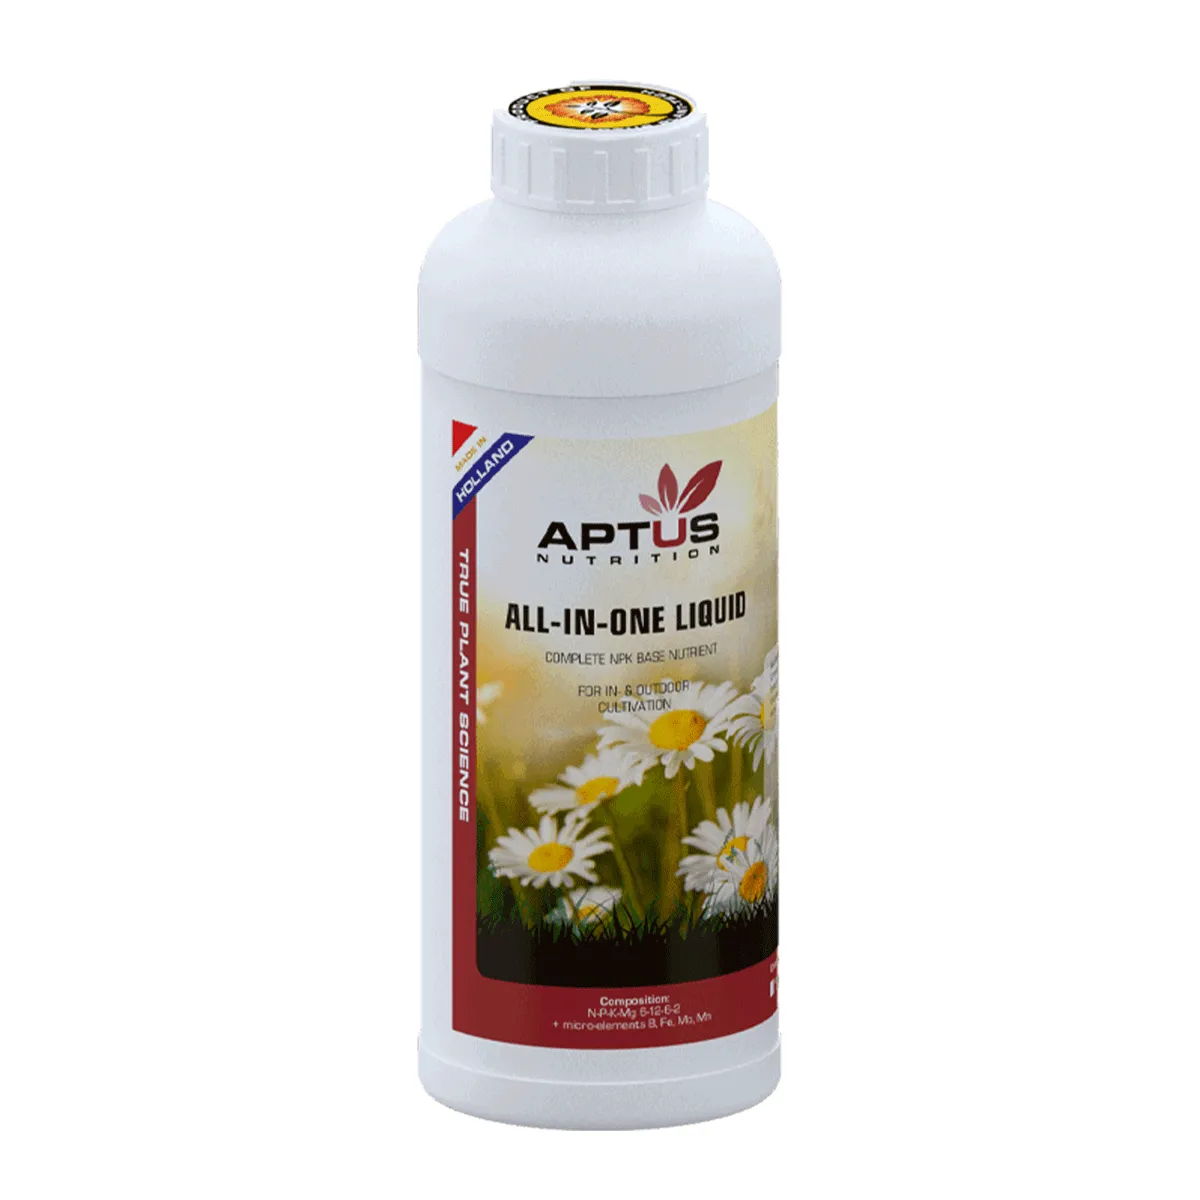 Aptus All-in-One Liquid от магазина GrowMix